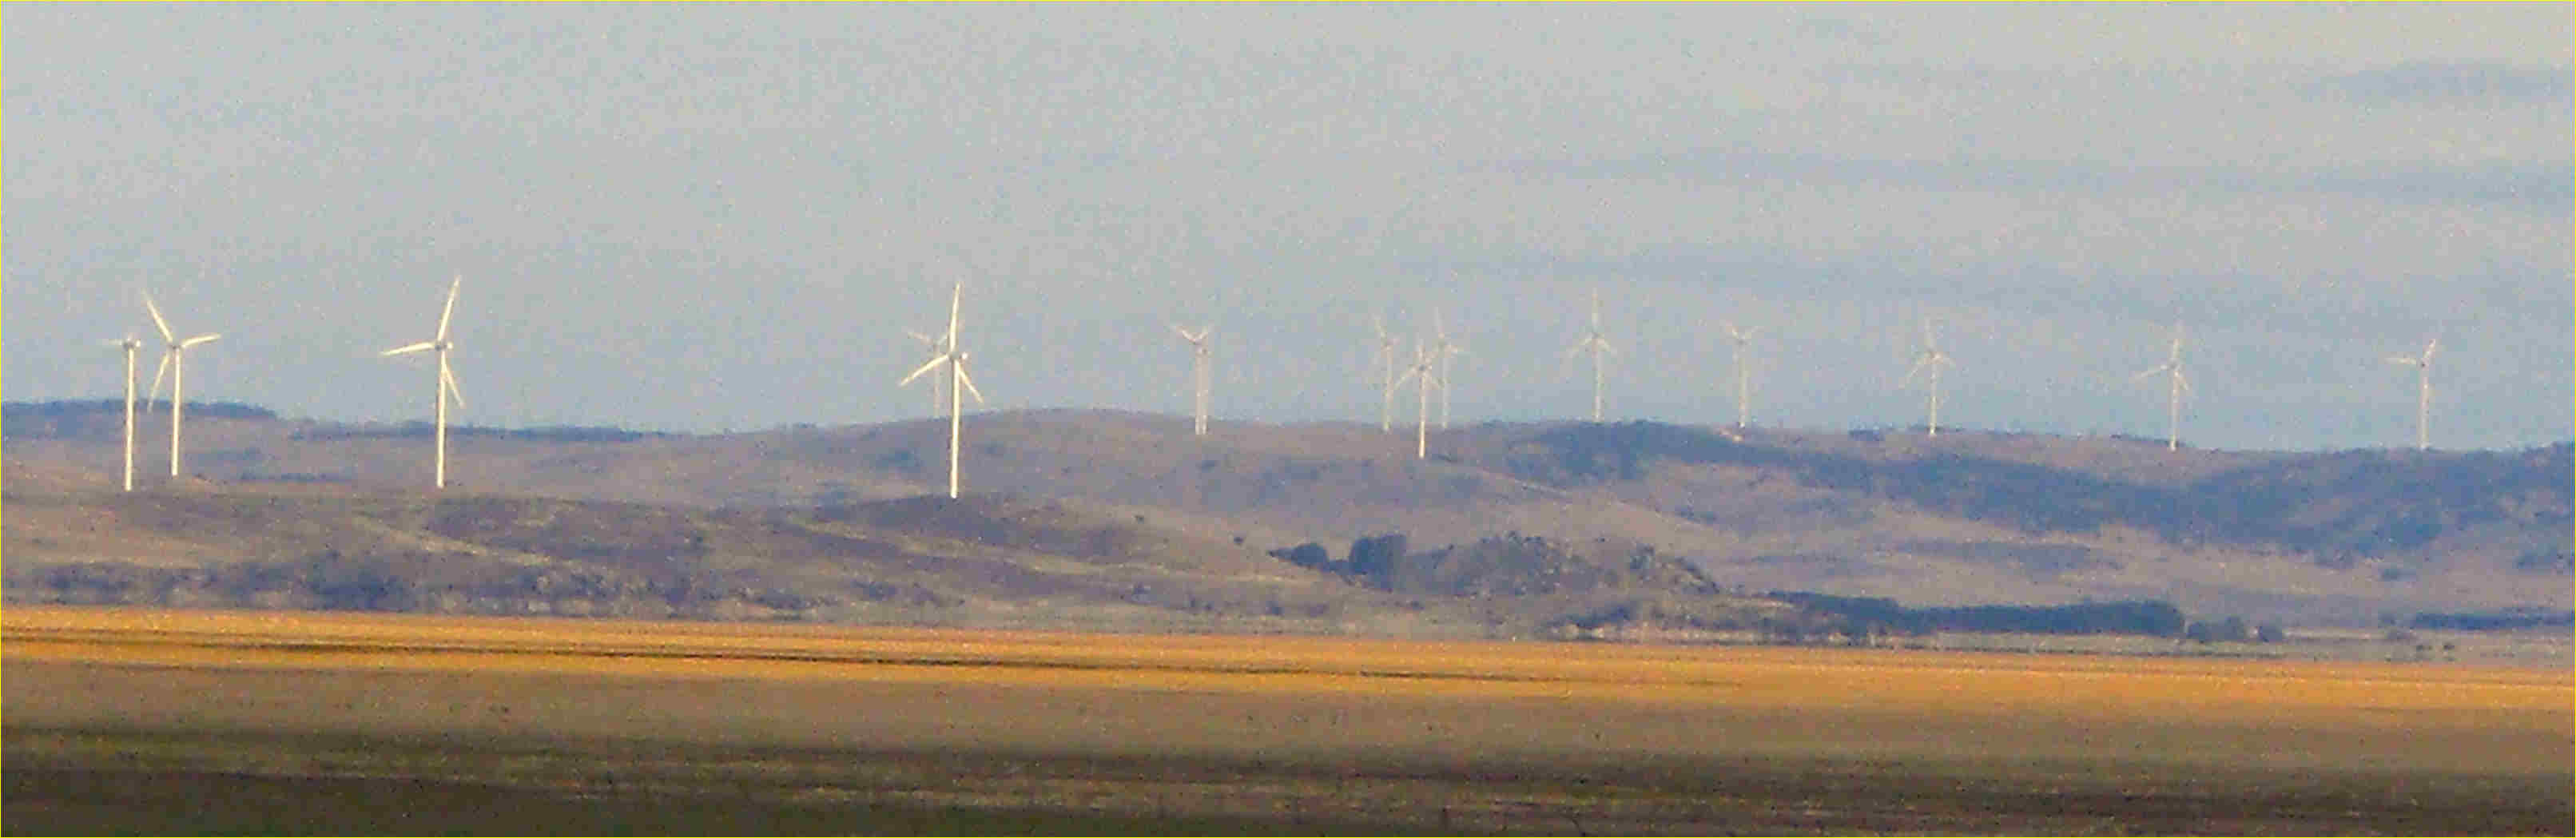 Wind turbines, Lake George